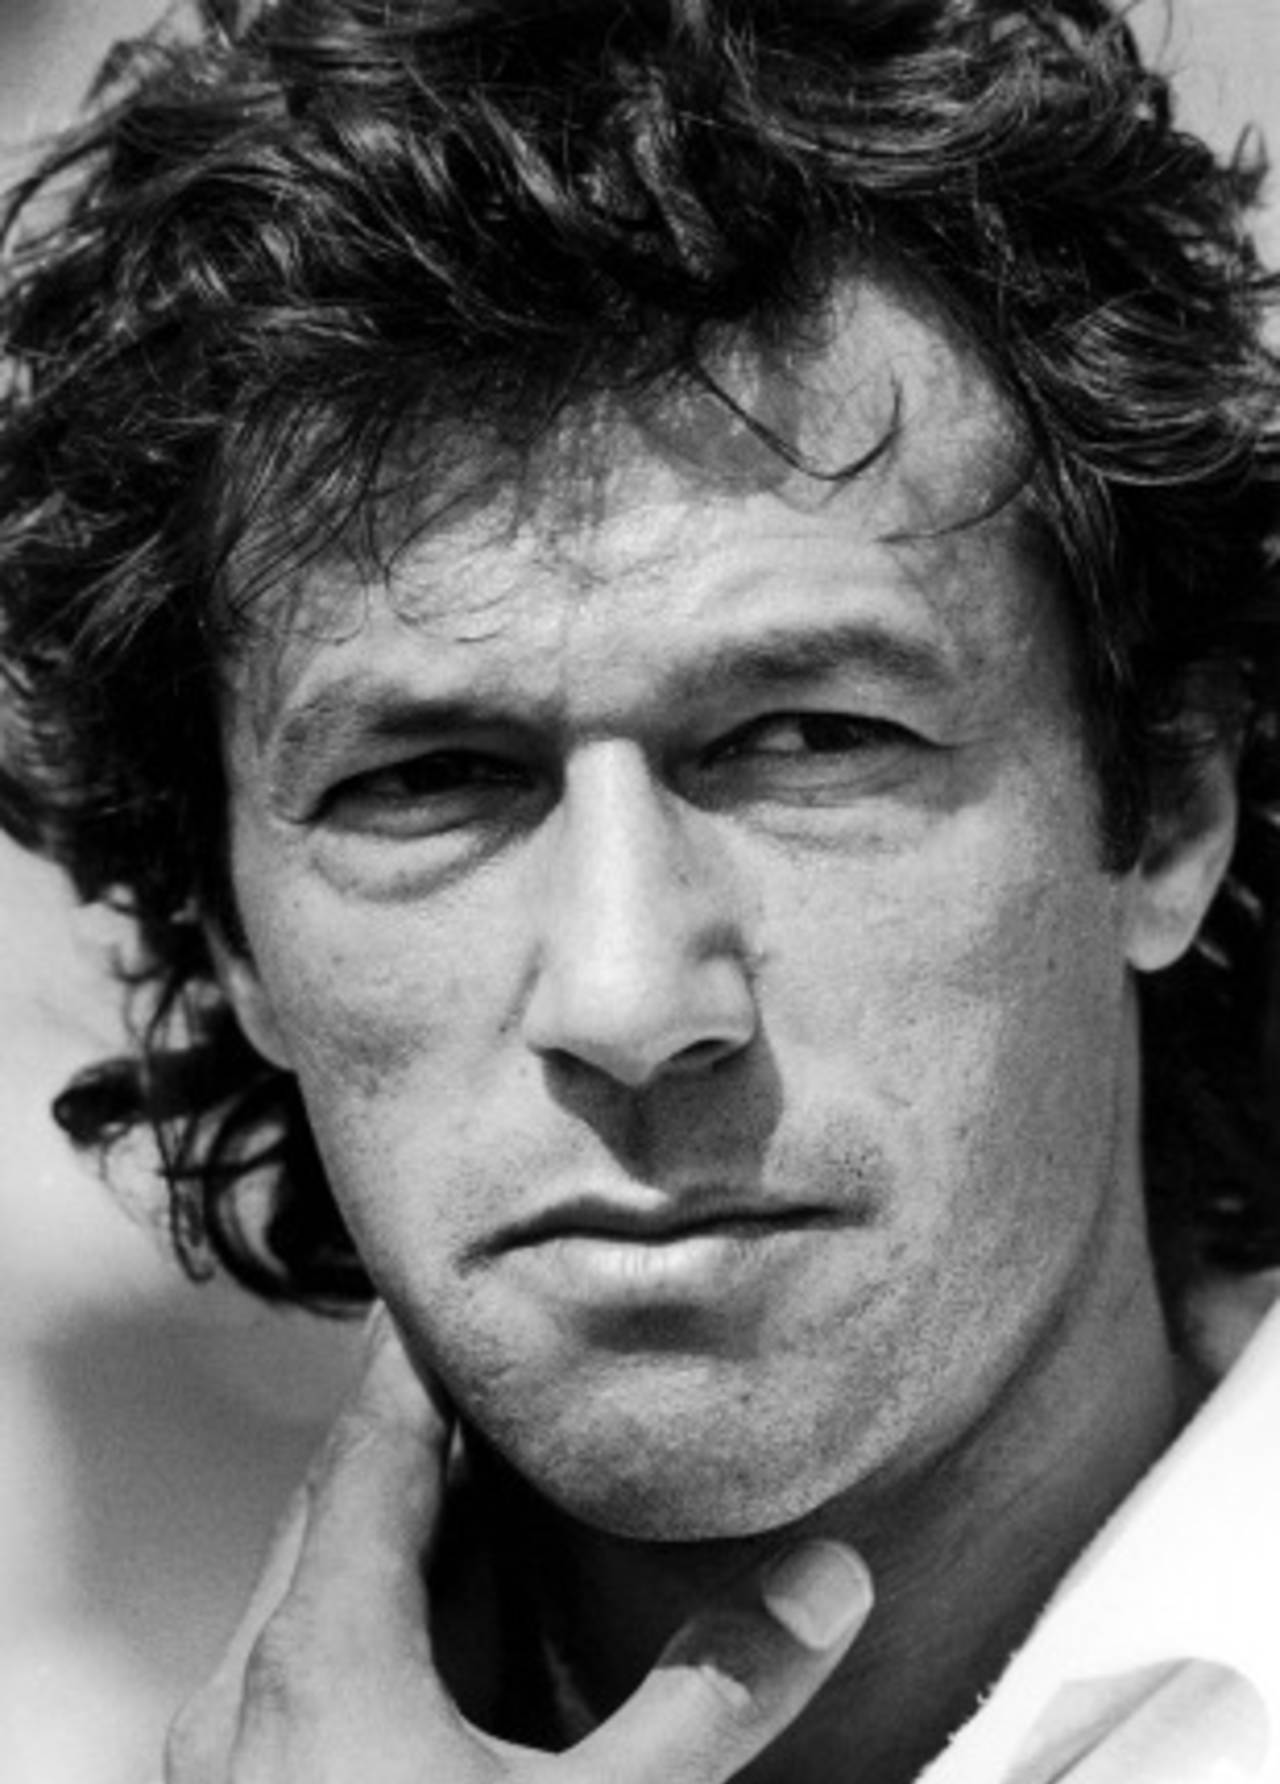 Imran Khan portrait, April 28, 1987